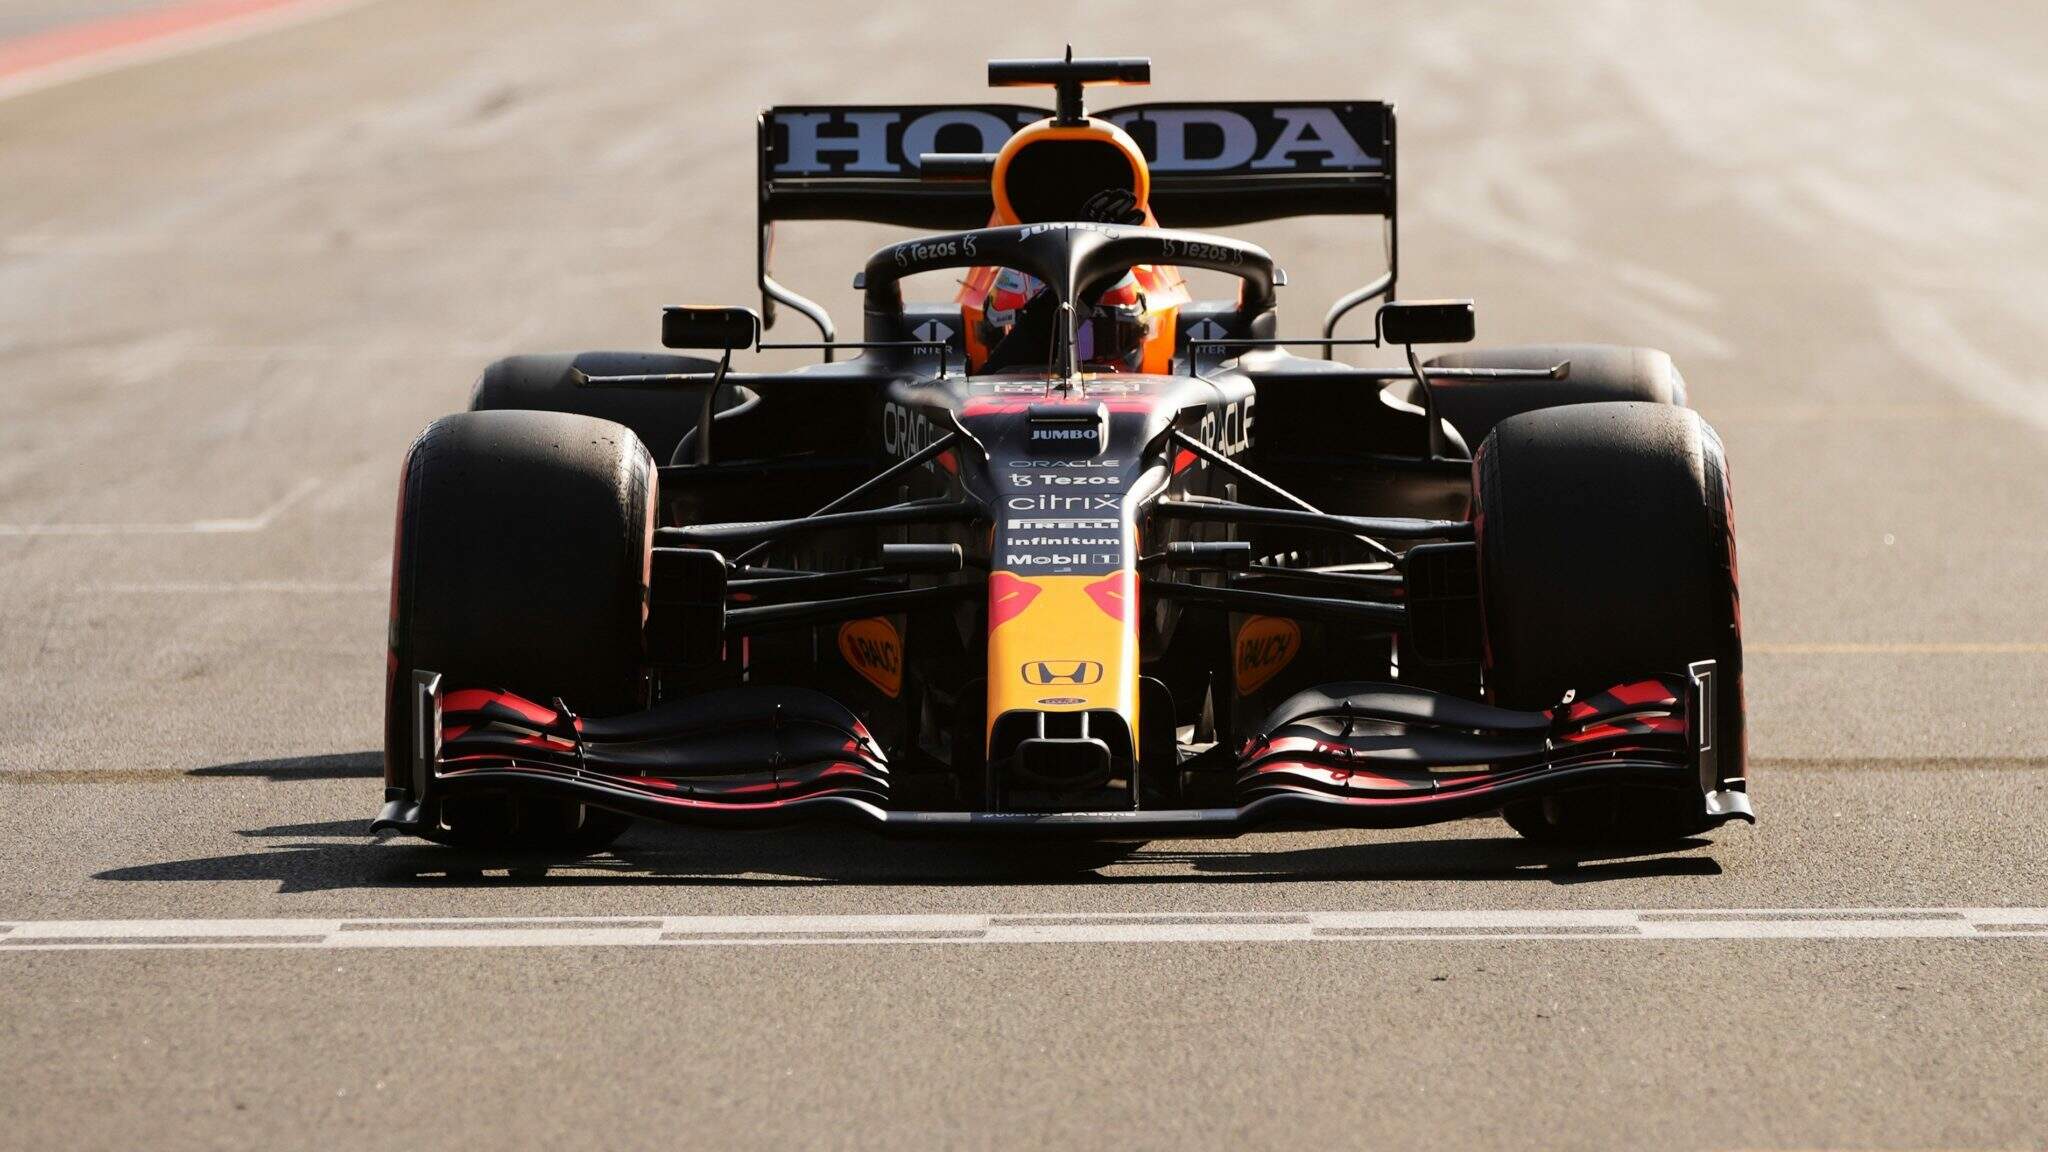 GP da Holanda: Norris supera Verstappen em treino; Ricciardo é